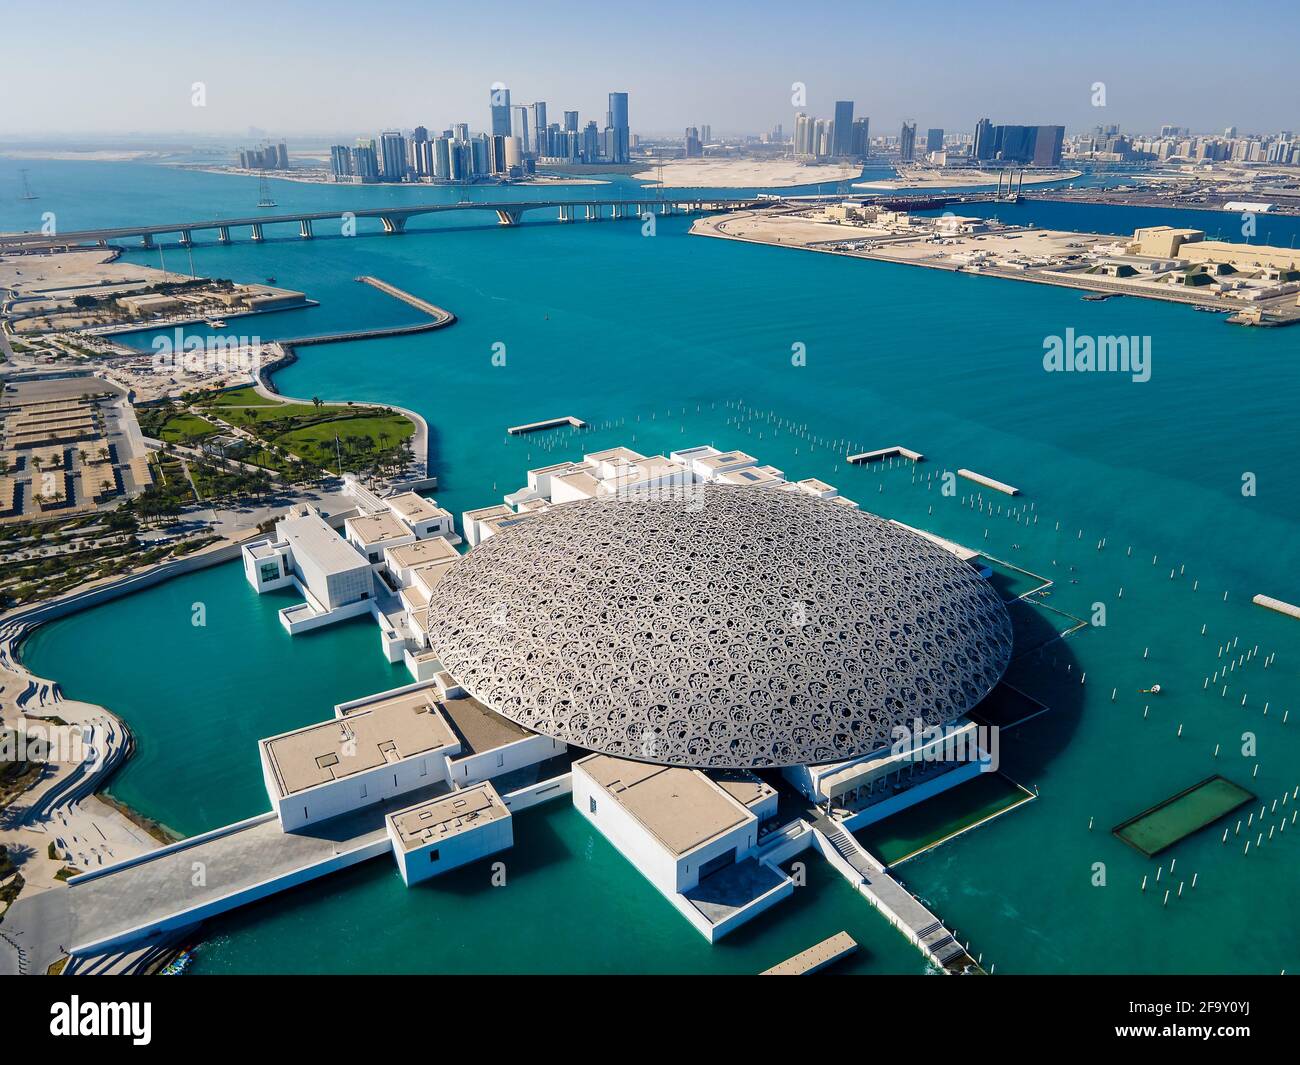 Abu Dhabi, Emirati Arabi Uniti - 6 aprile 2021: Museo del Louvre e paesaggio urbano aereo di Abu Dhabi che si innalzano dalle acque marine dell'Emirati Arabi Uniti Foto Stock